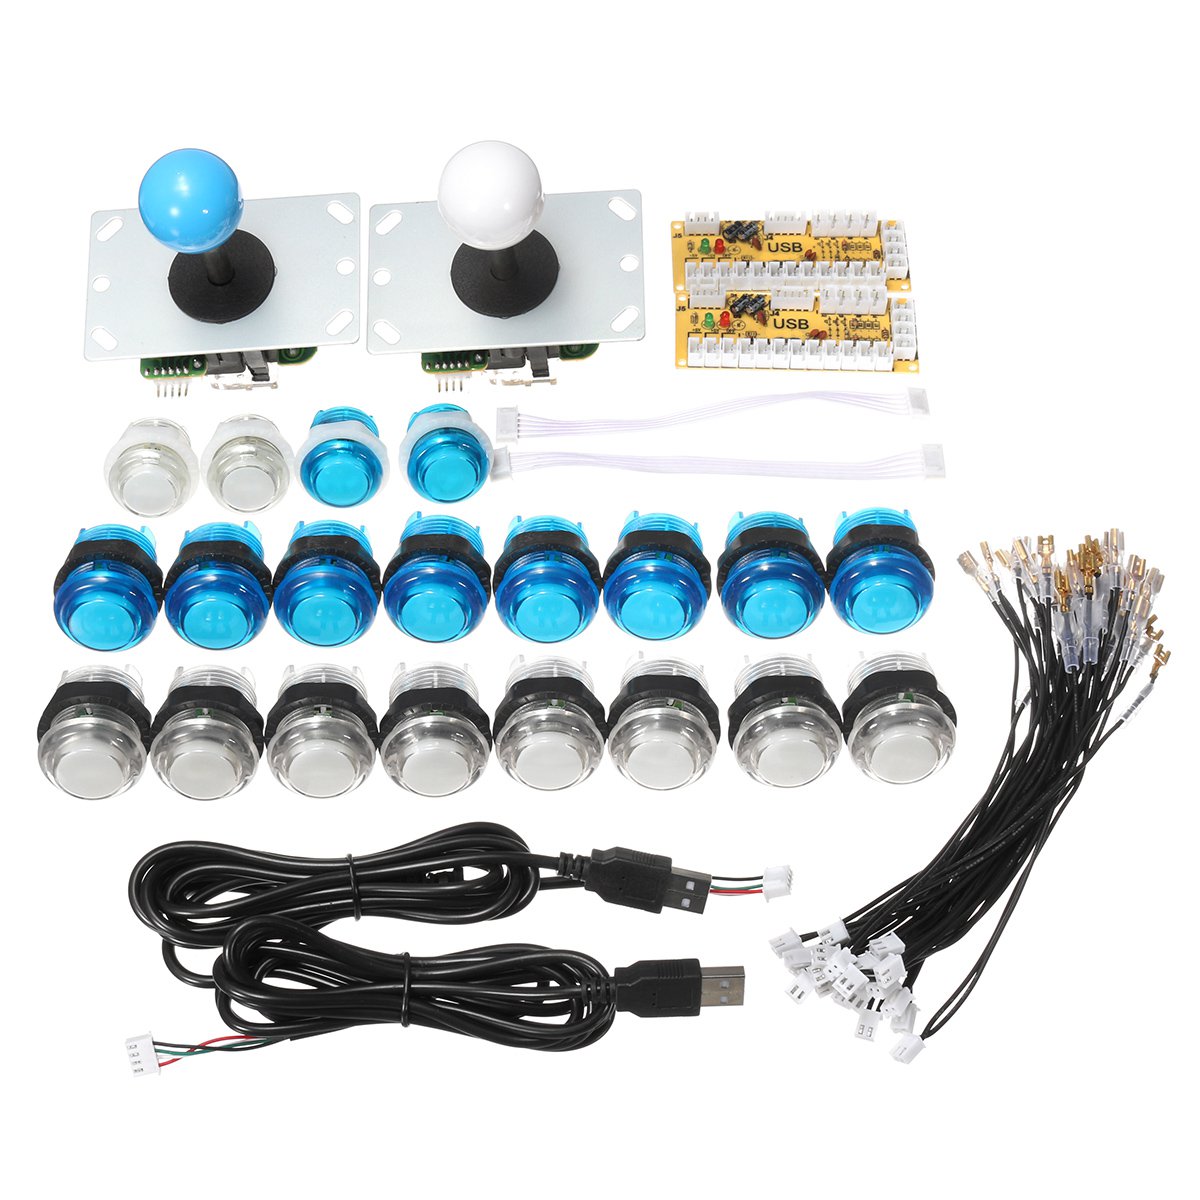 Cero retraso Joystick Arcade DIY Kit de empuje con LED Botón de Joystick USB + codificador + arnés de cable controlador USB para Arcade Mame juego de Arcade